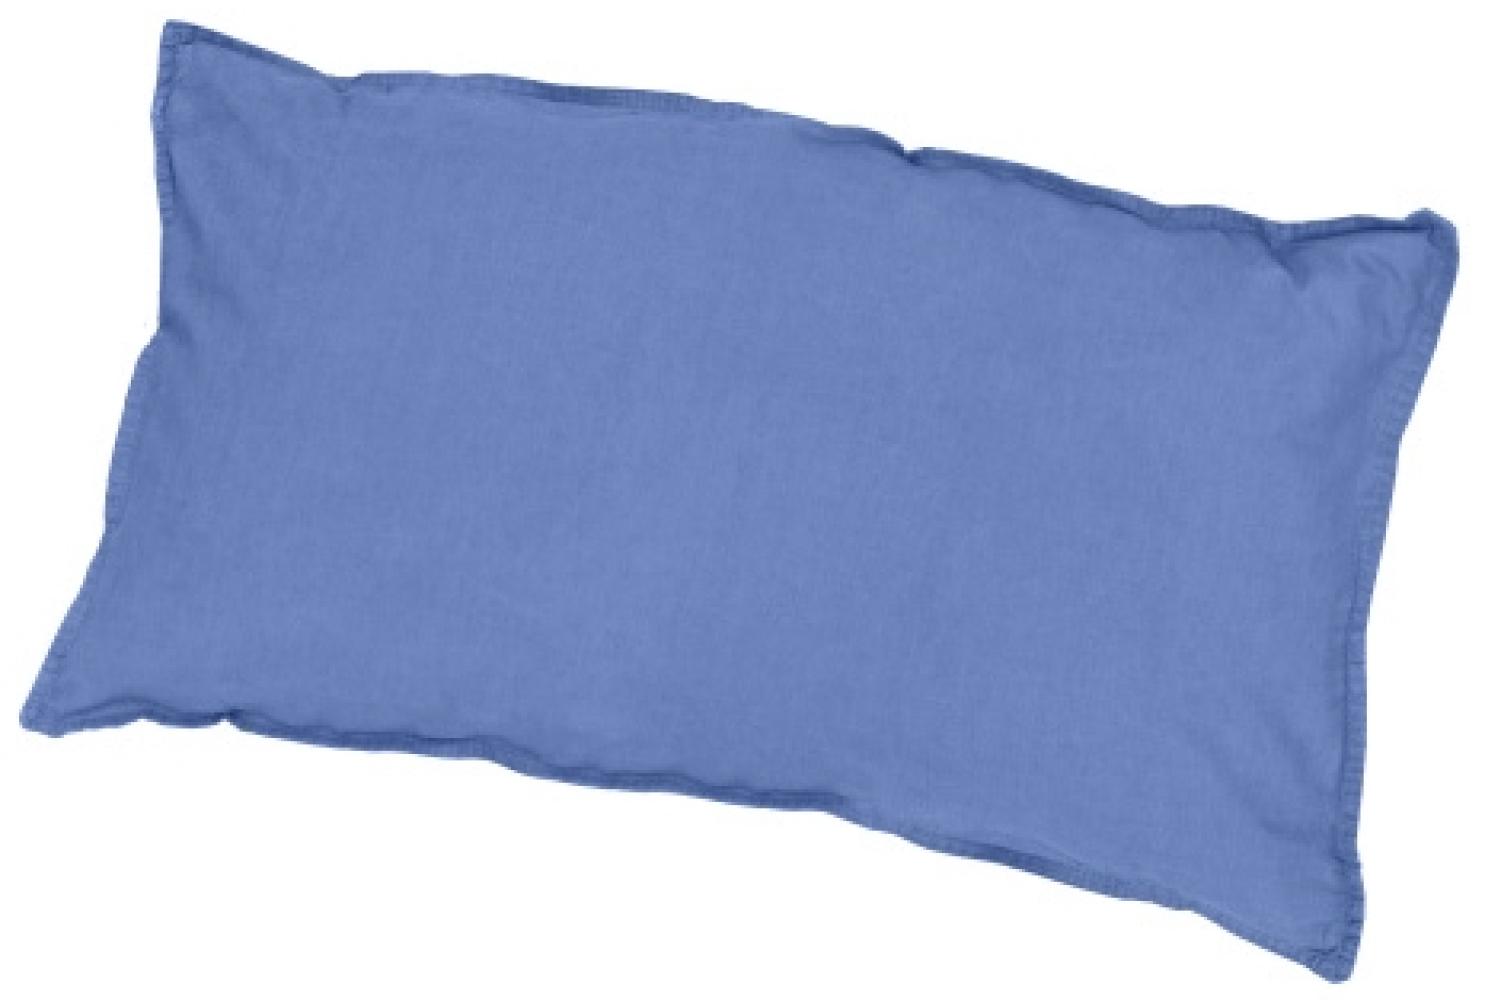 Traumhaft gut schlafen Stone-Washed-Bettwäsche aus 100% Baumwolle, in versch. Farben und Größen : 40 x 80 cm : Jeans Bild 1